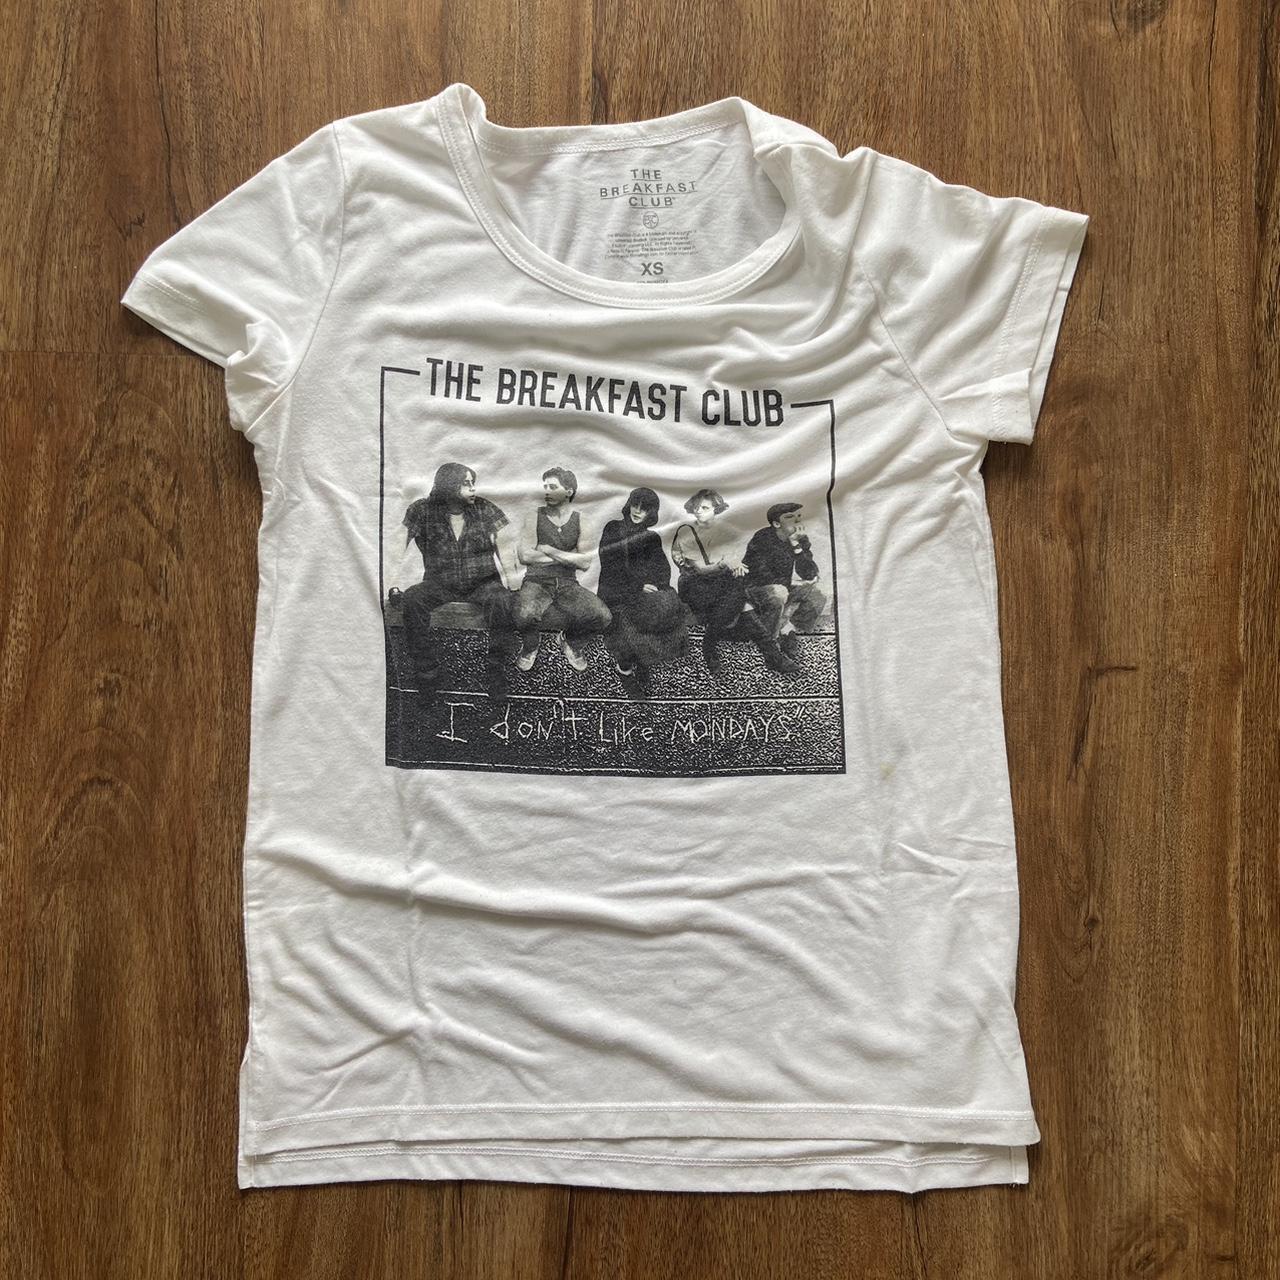 Kohl's Women's Black and White T-shirt | Depop